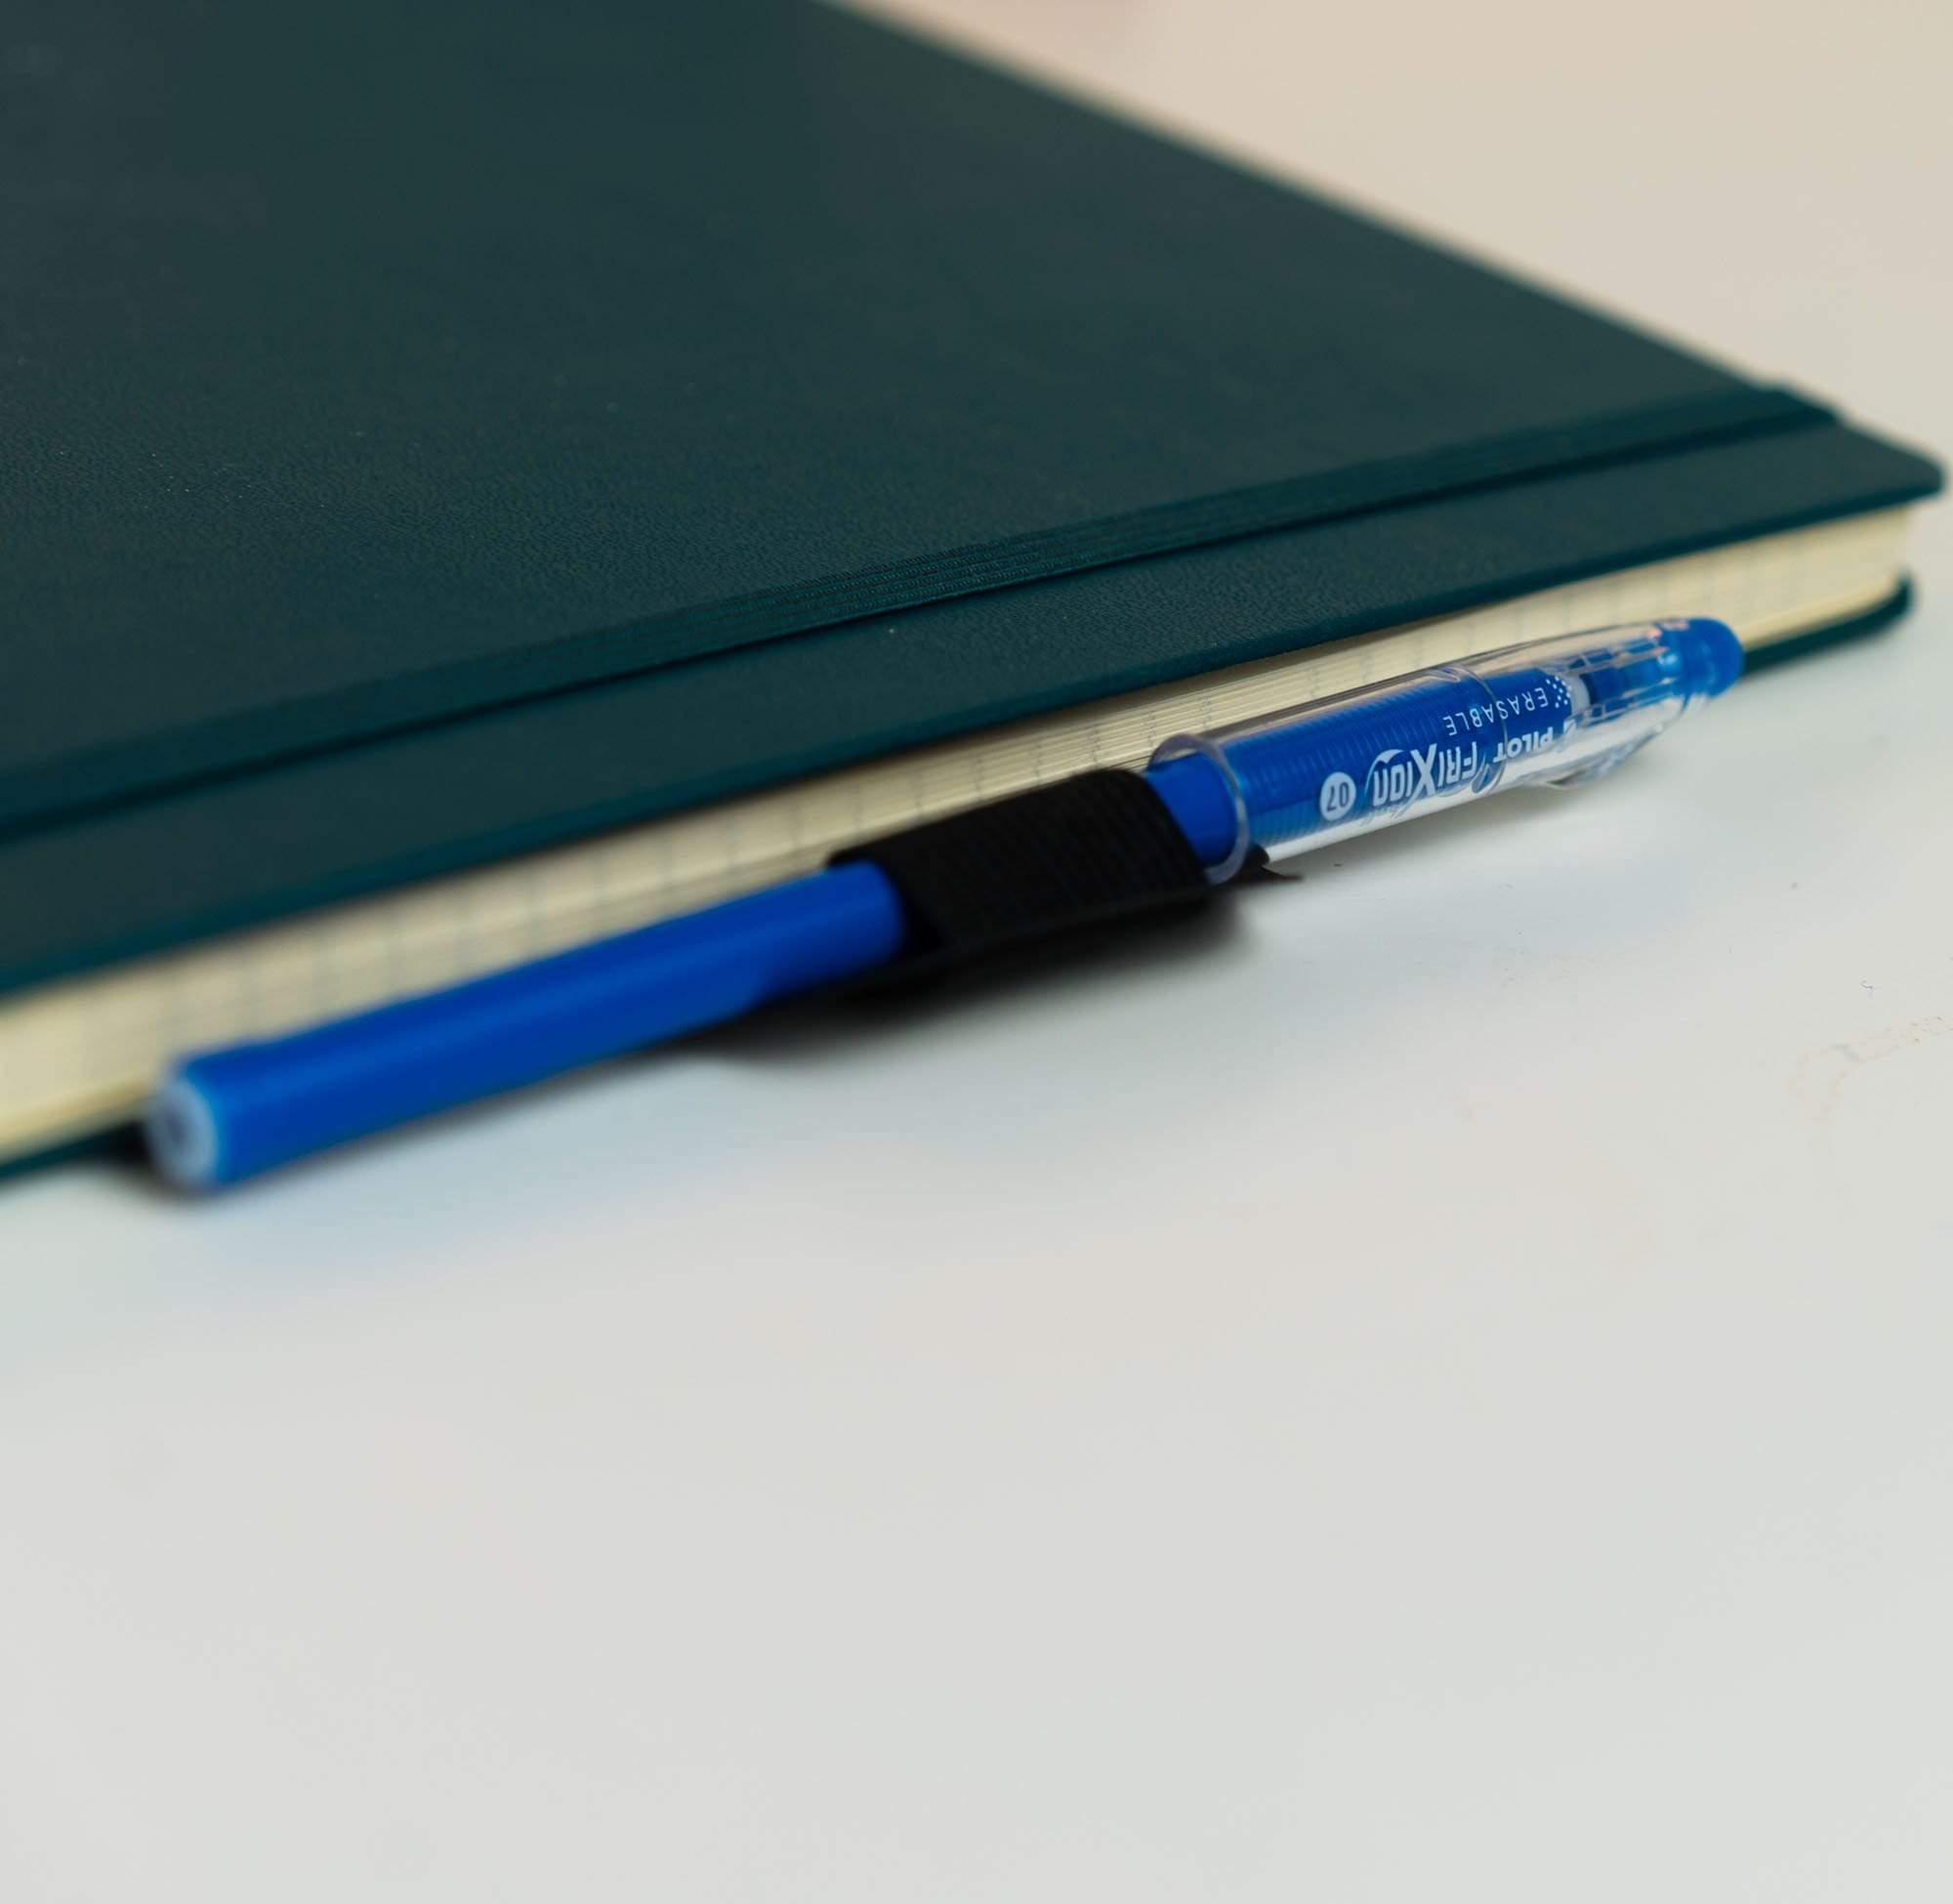 Aqua & Purple Notebook Pen Holder, Planner Pen Holder, Pen Holder